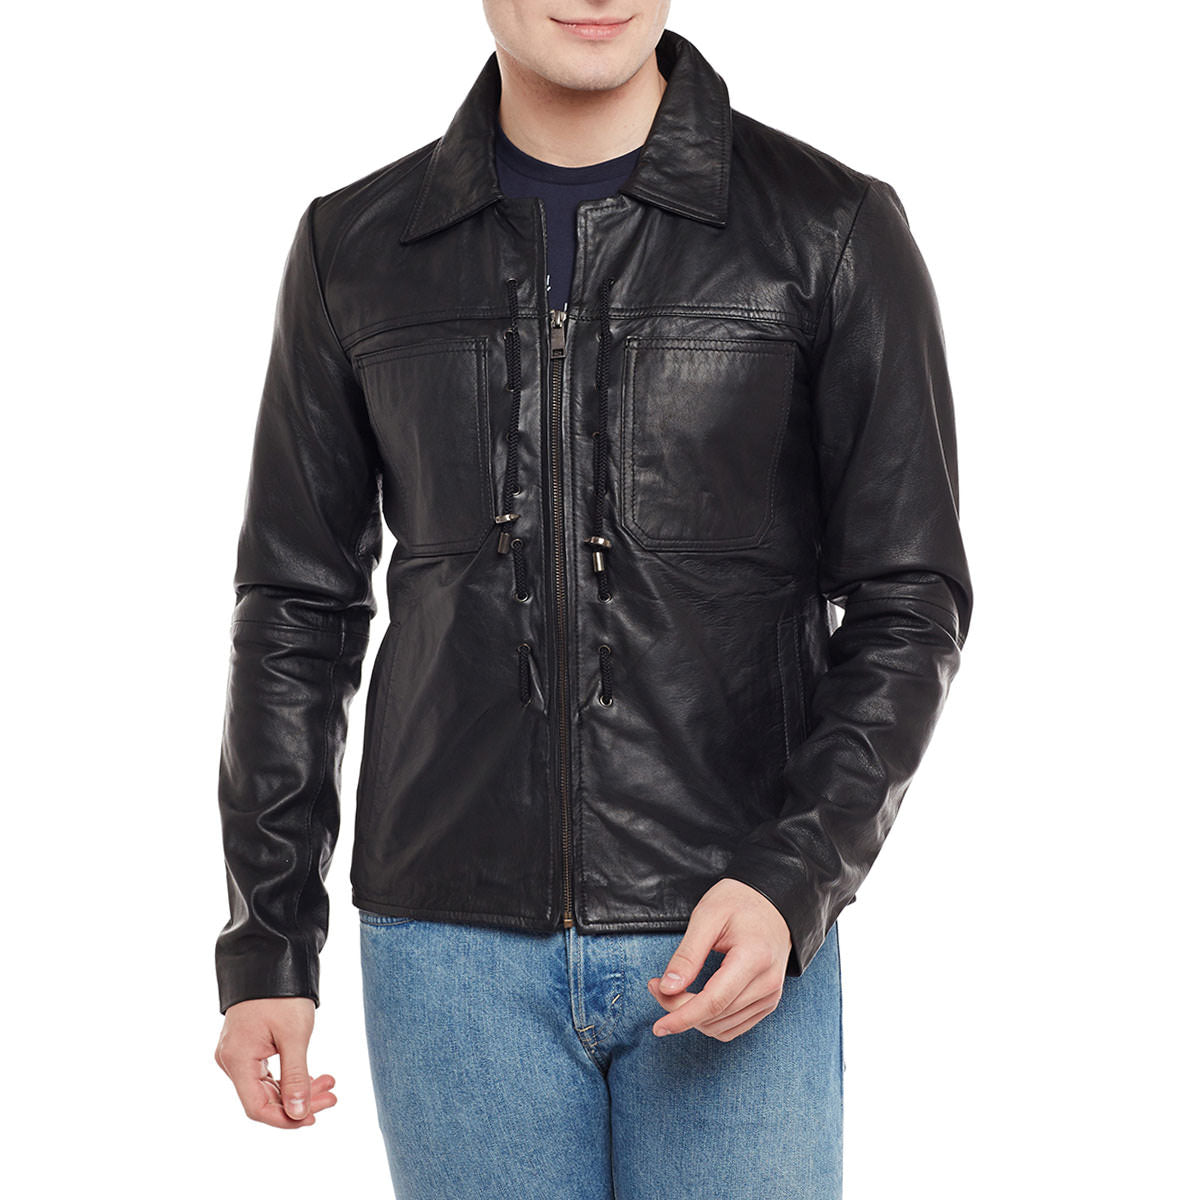 Threaded Design Black Leather Jacket For Men